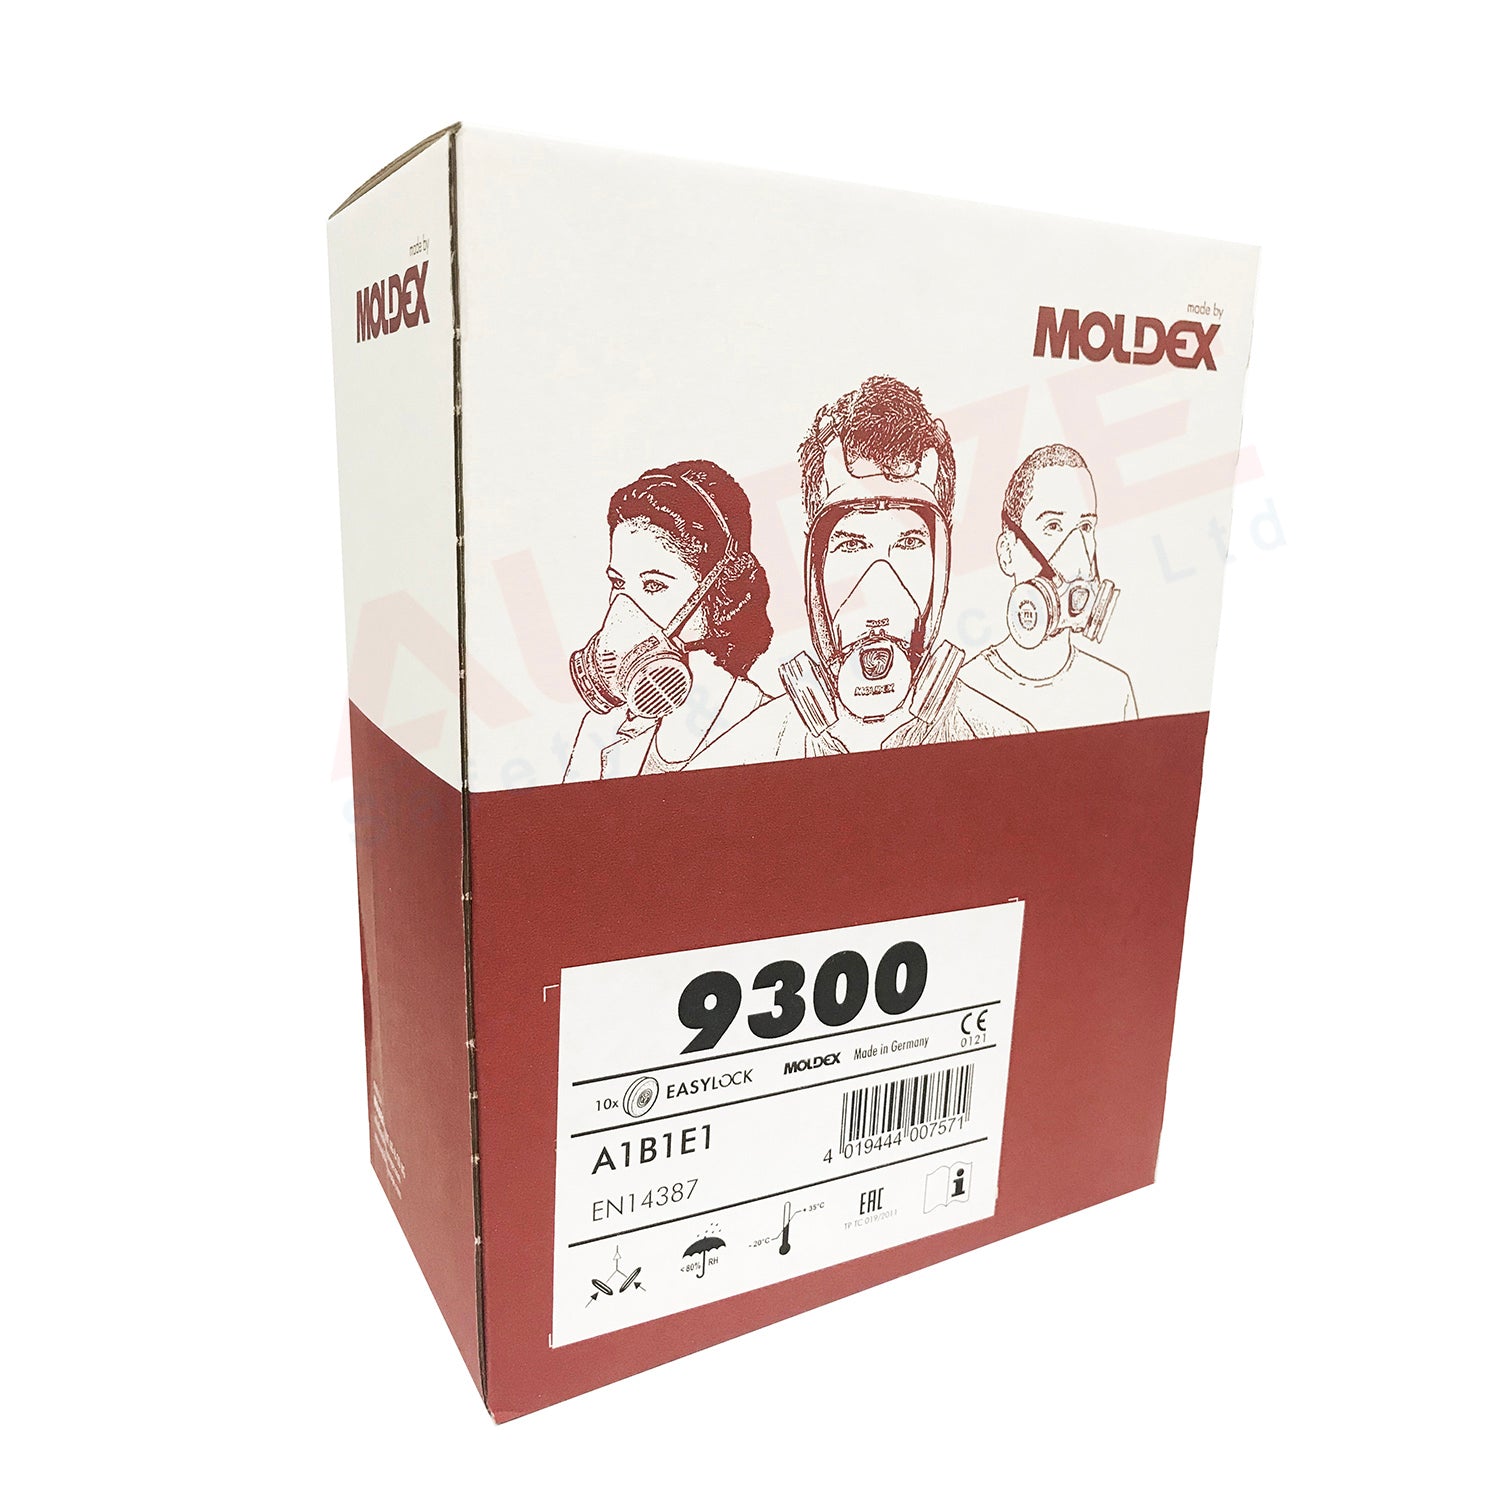 Moldex 9300 EasyLock A1B1E1 Gas Filters Box